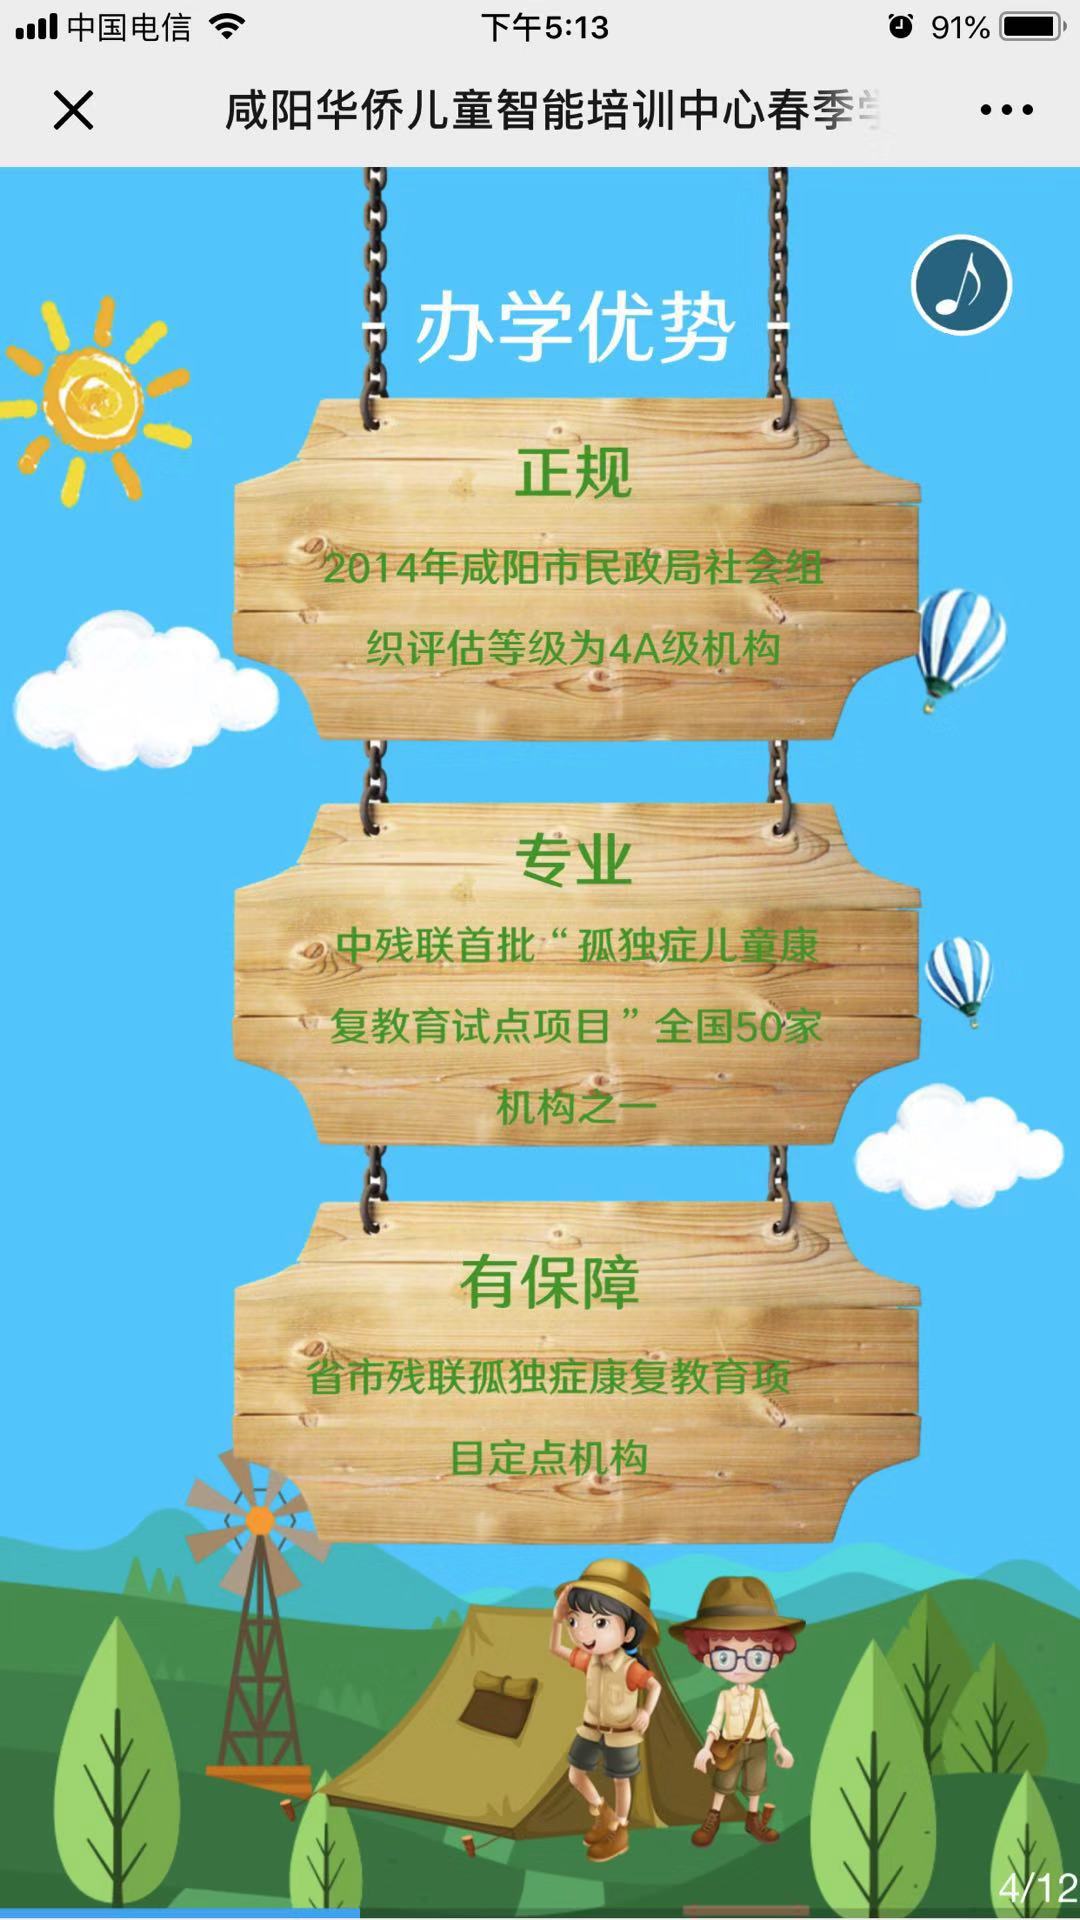 咸阳华侨儿童智能培训中心2019春季招生开始了